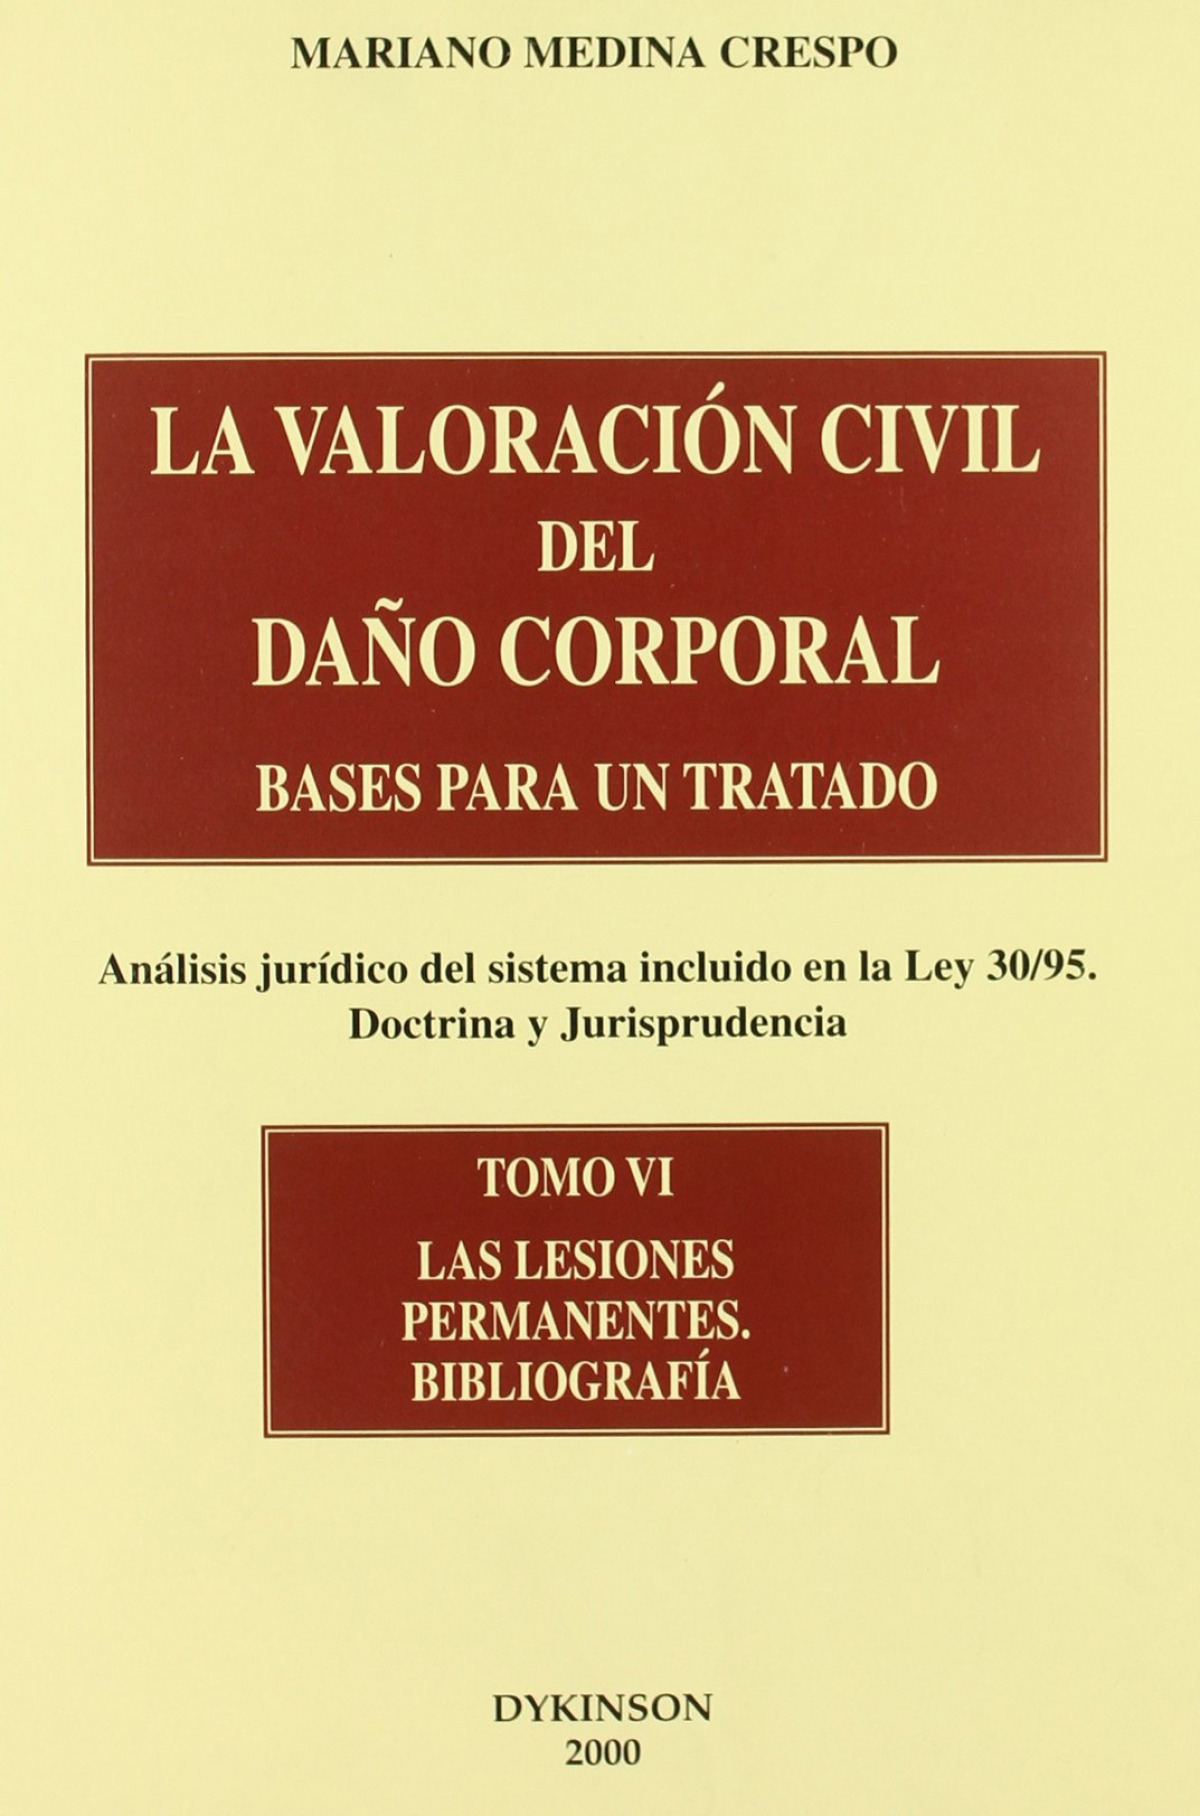 Bases para un tratado, análisis jurídico del sistema incluido en la Le - Medina Crespo, Mariano